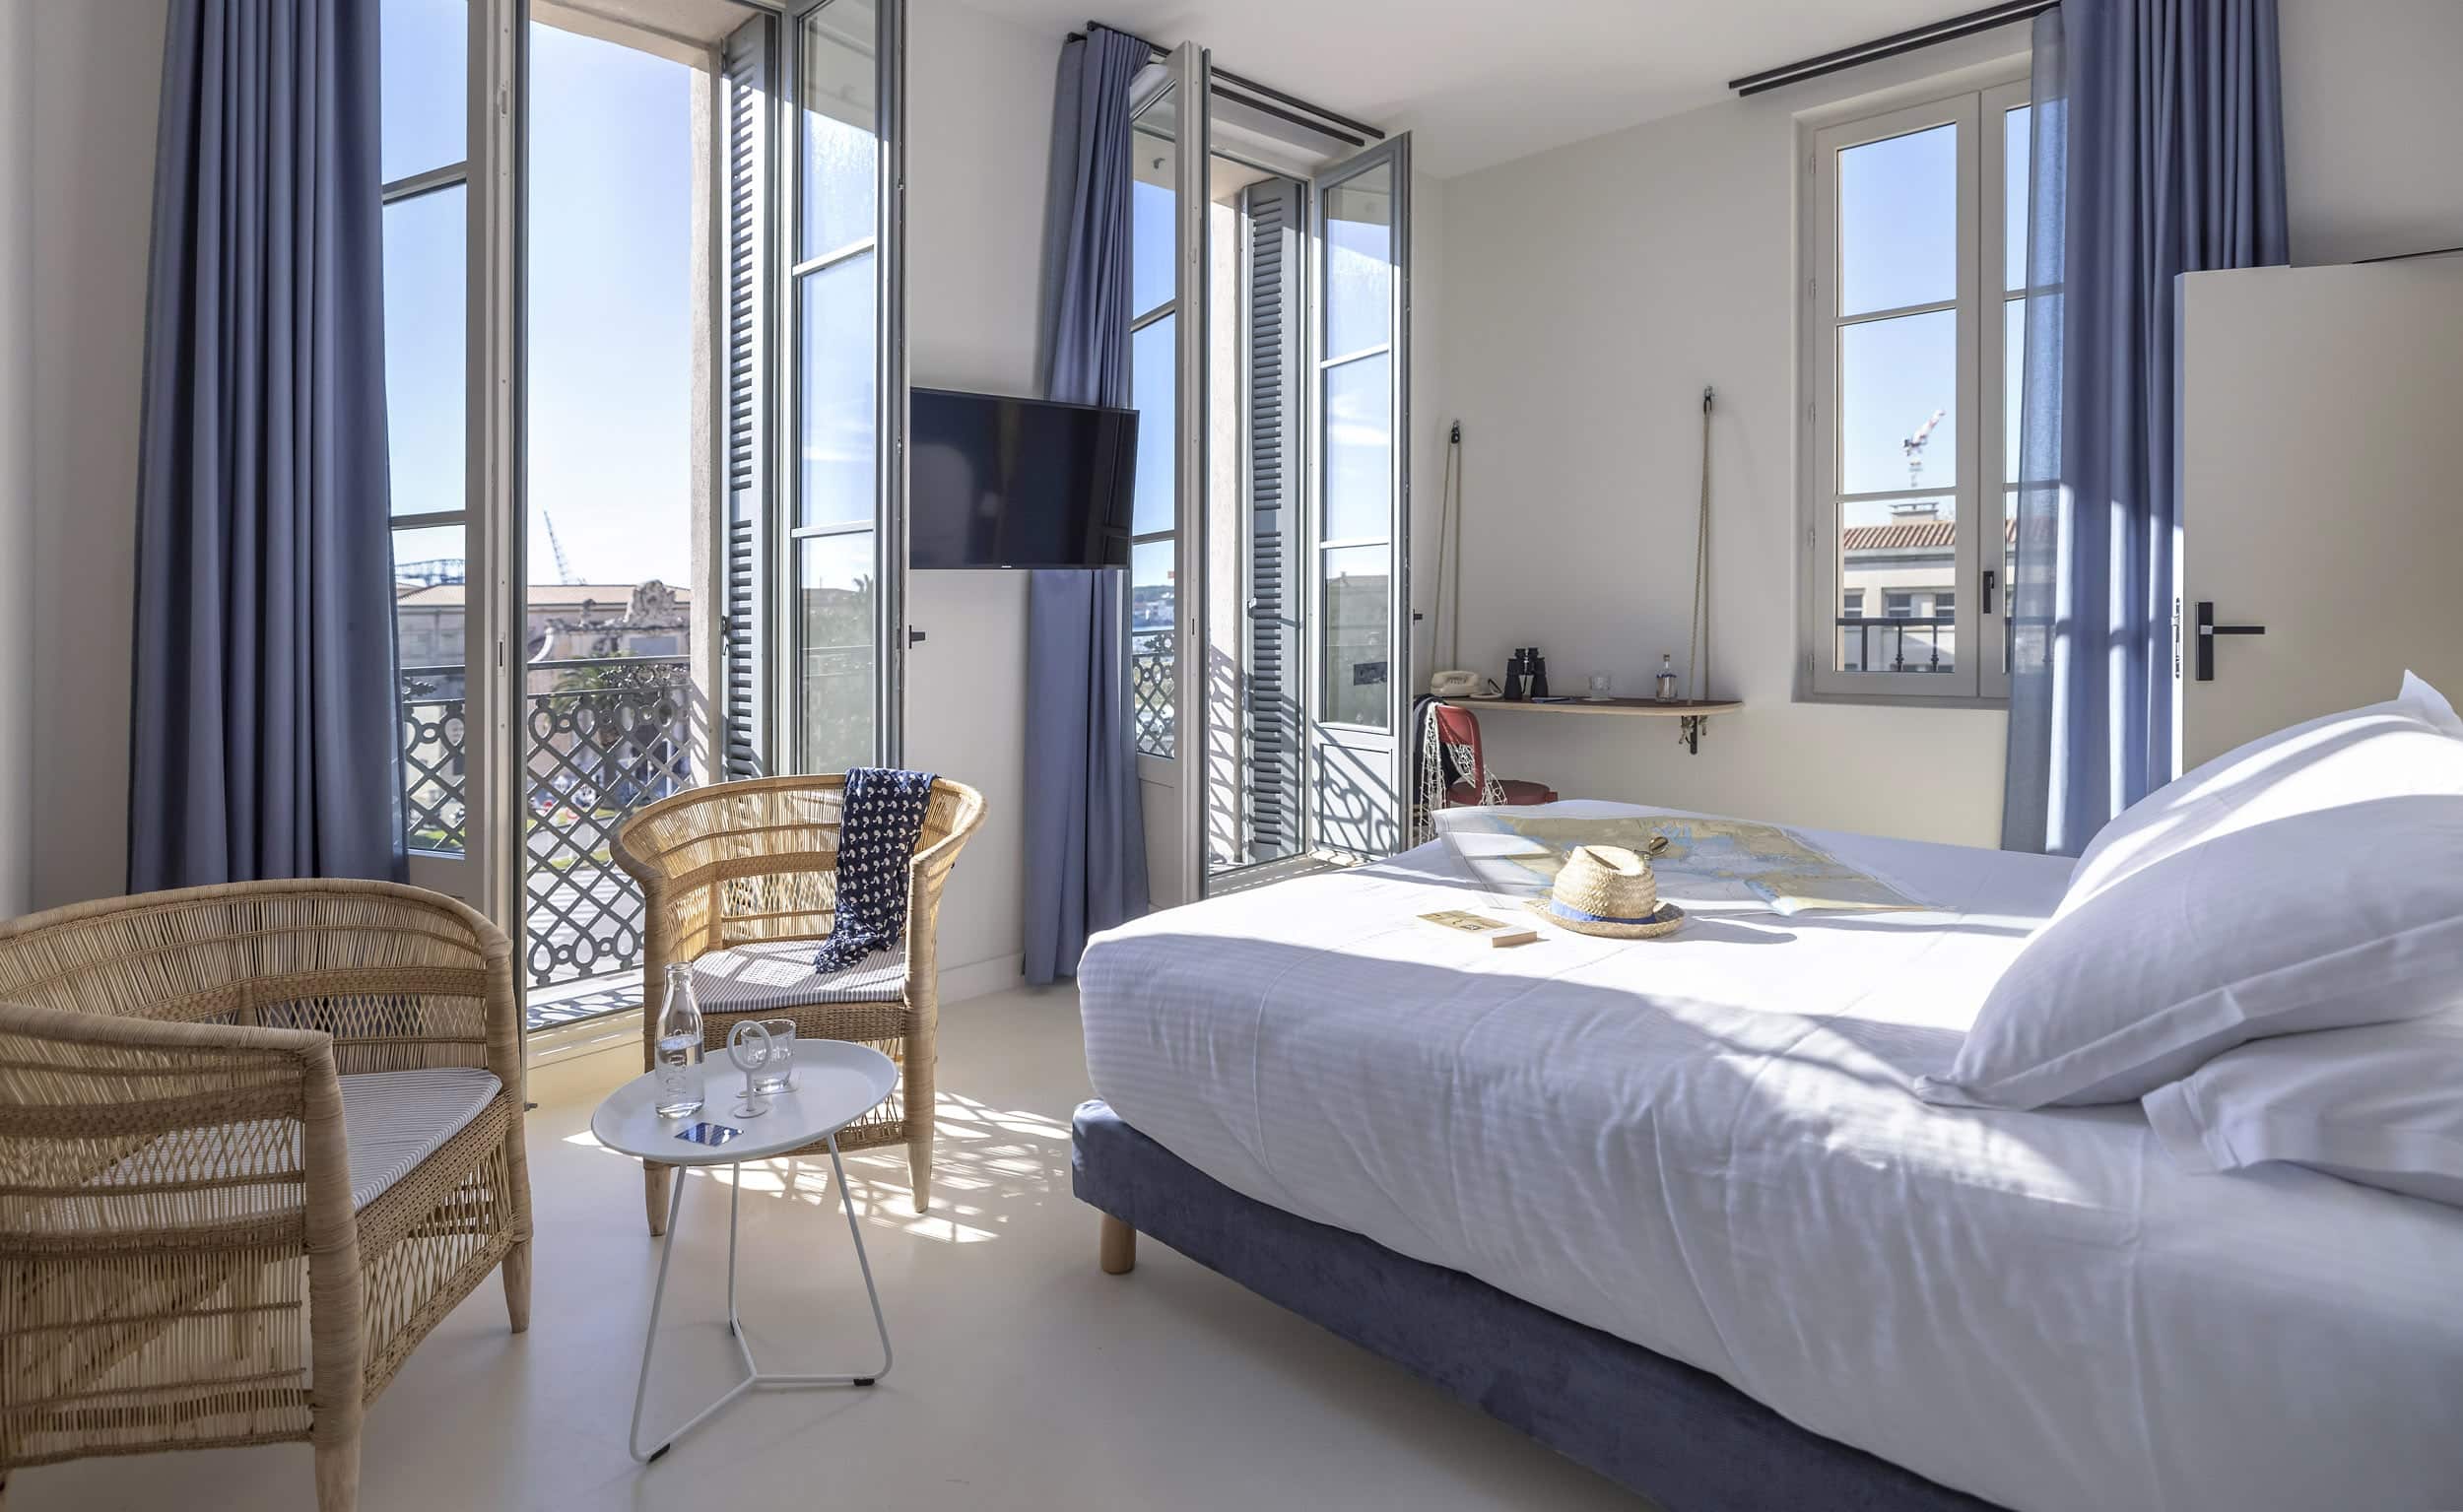 L'Eautel Toulon Port vous propose des chambres de haute qualité pour profiter au maximum de votre séjour d'affaires